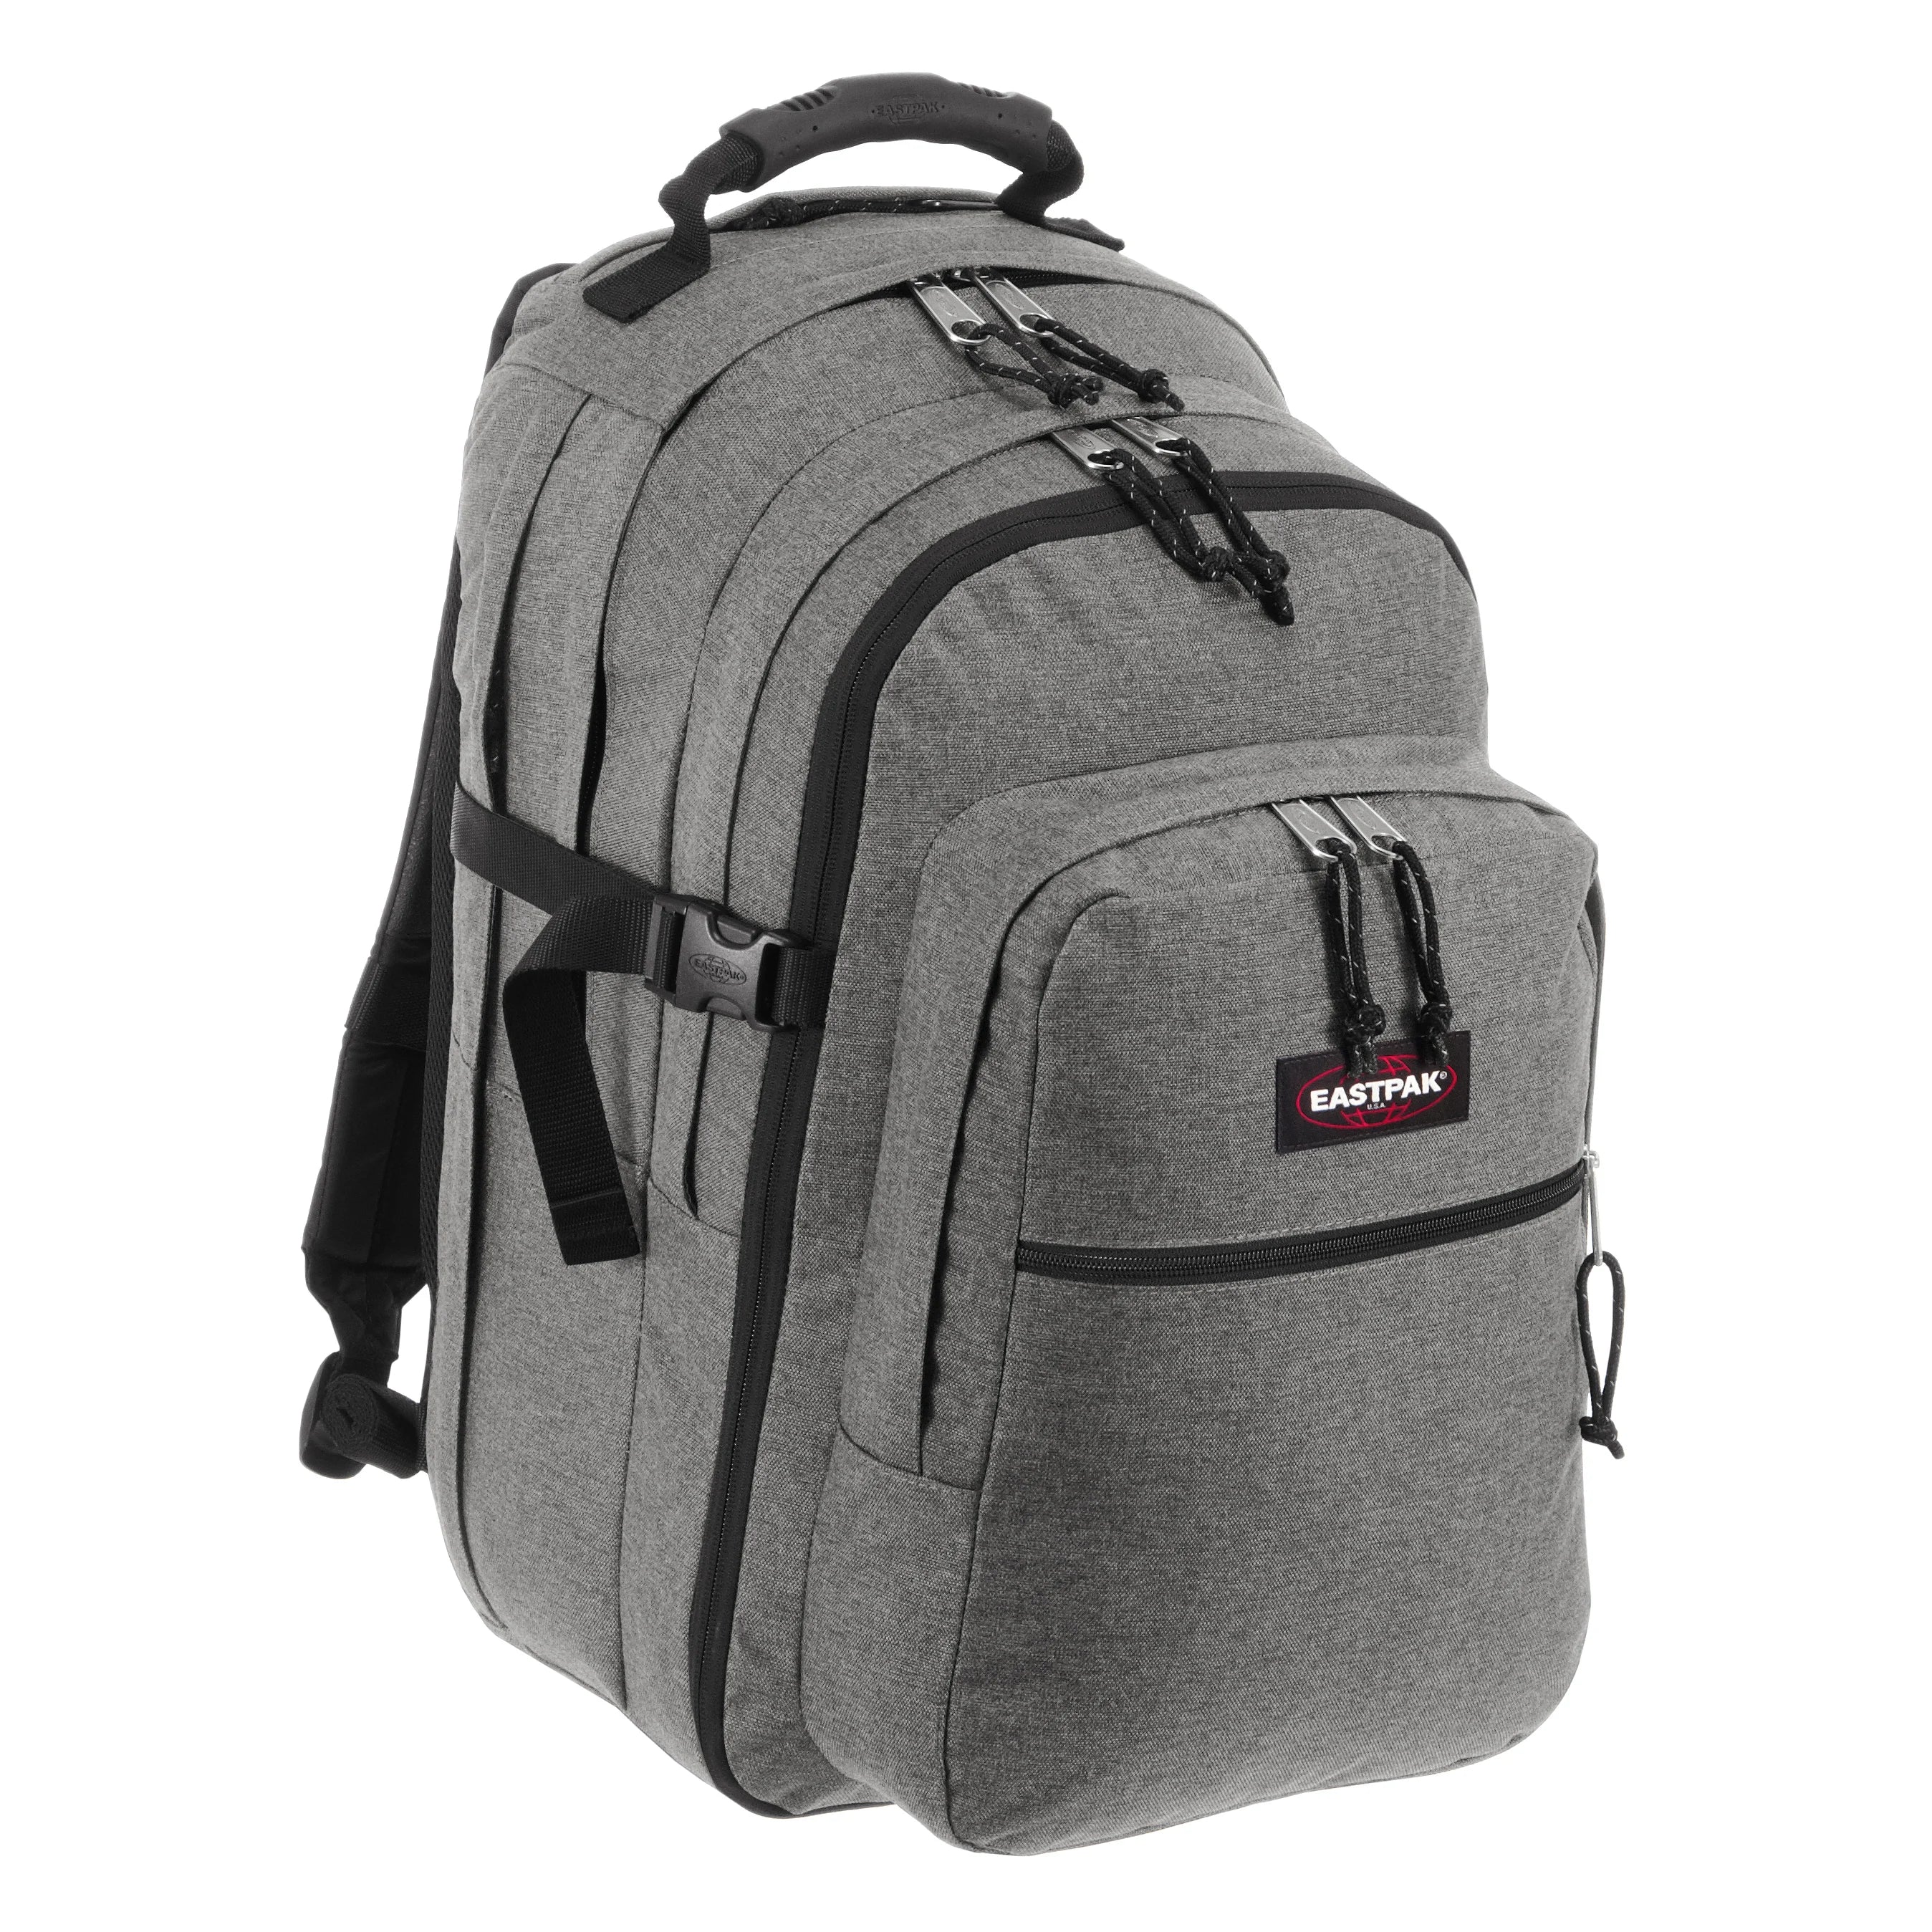 Eastpak Authentic Re-Check Tutor sac à dos avec compartiment pour ordinateur portable 48 cm - gris dimanche